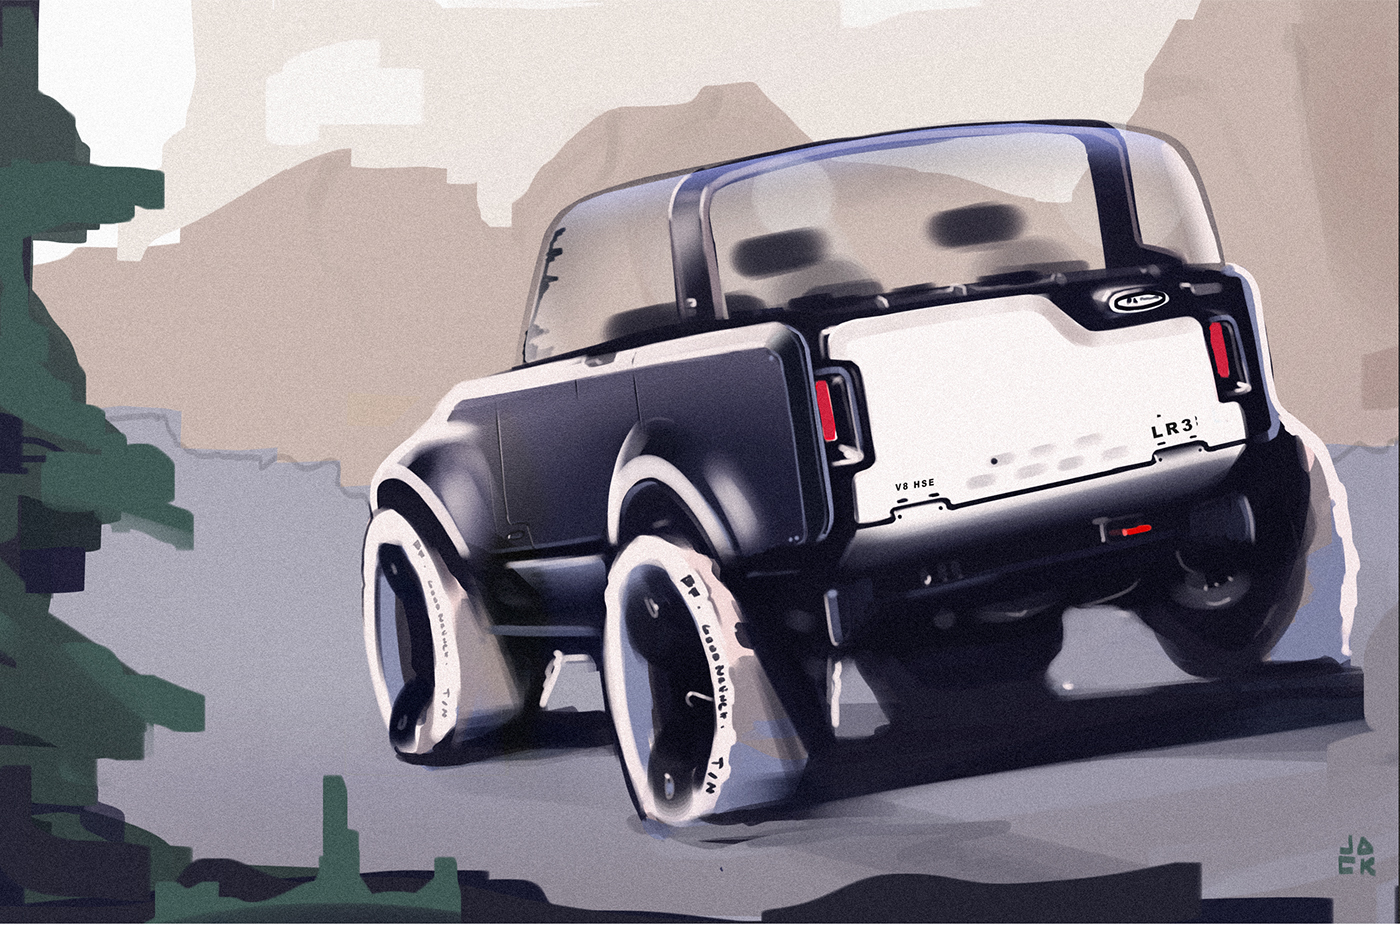 sketching sketchbook automotivedesign design transportationdesign doodle digital rendering Humbercollege